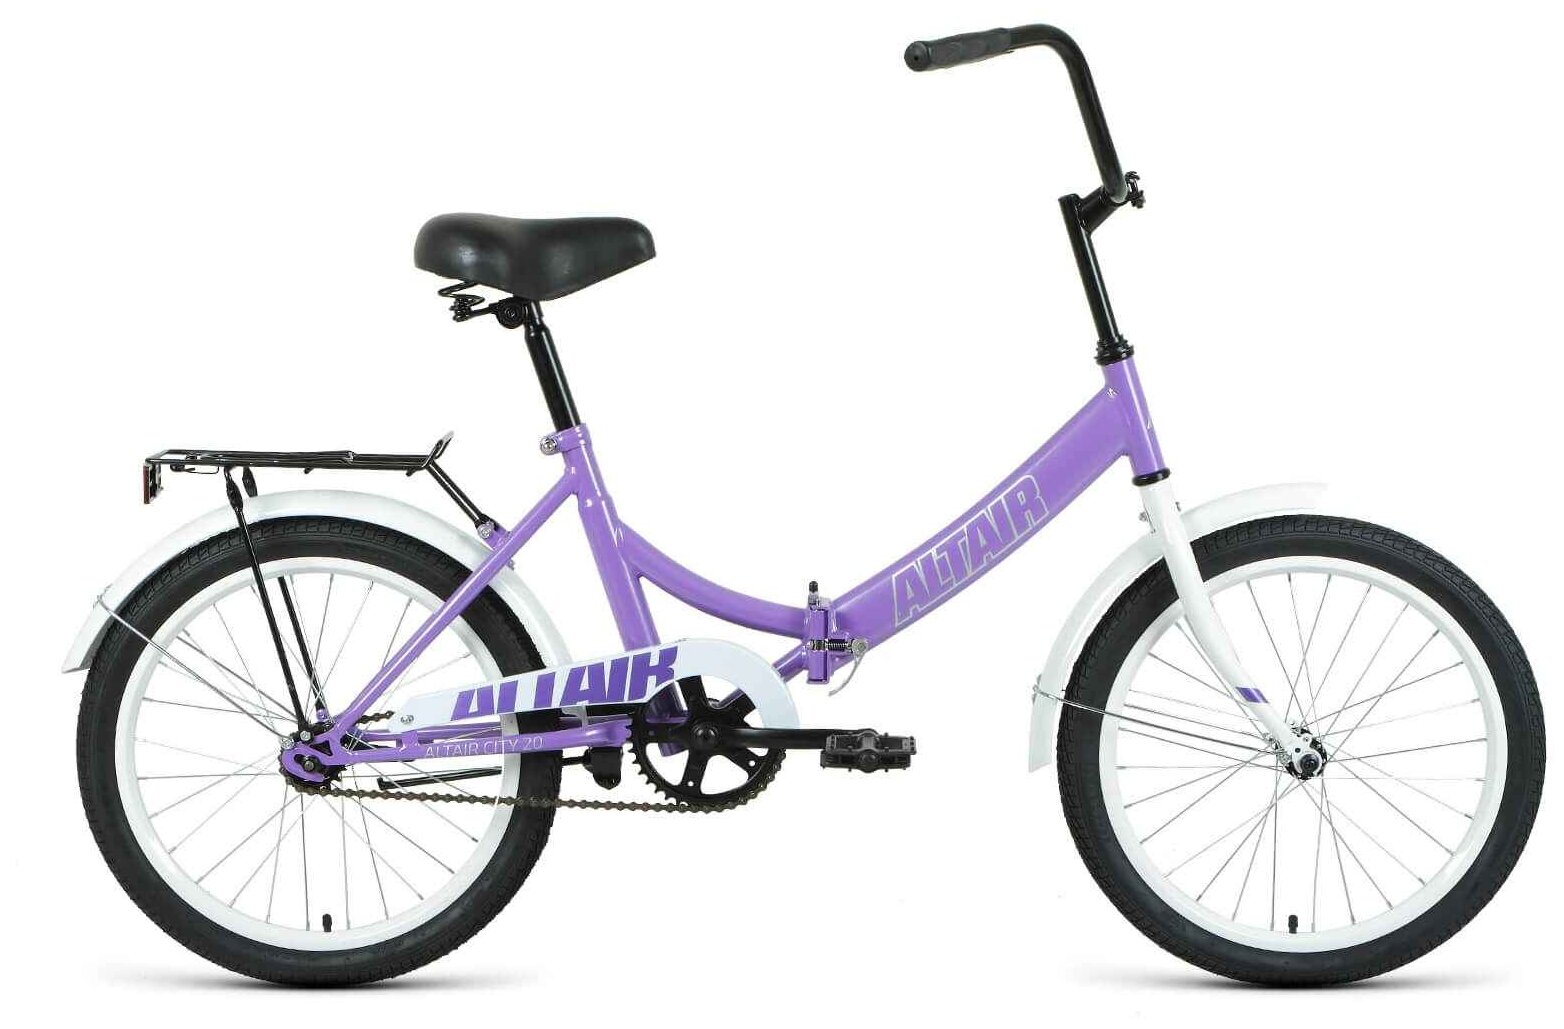 Велосипед 20 FORWARD ALTAIR CITY (1-ск.) 2022 фиолетовый/серый